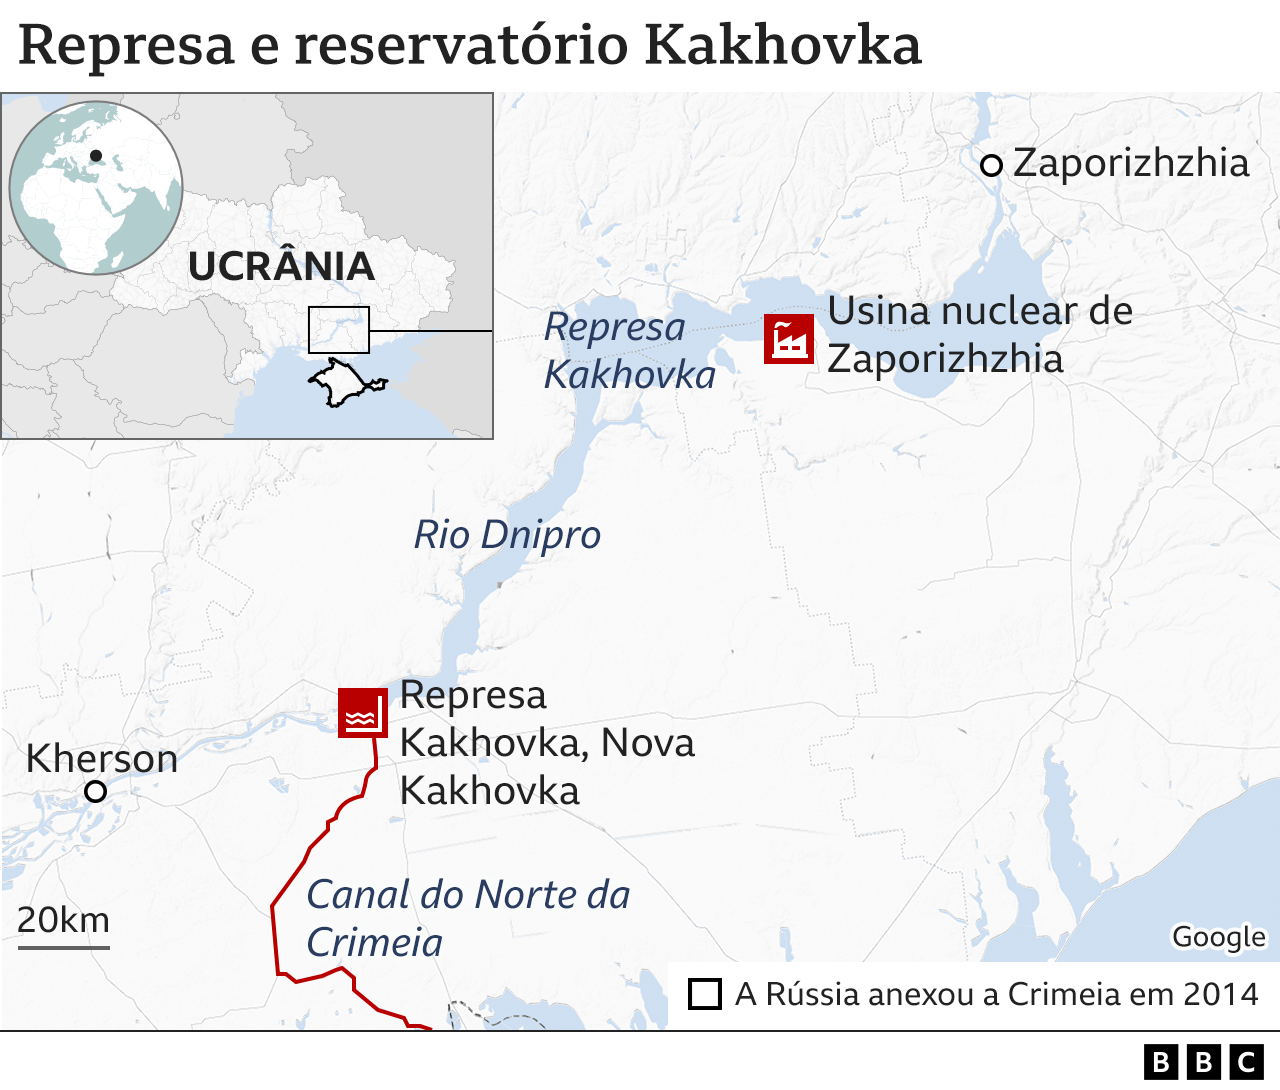 Mapa ilustrando a rota do Canal do Norte da Crimeia e a central nuclear de Zaporizhzhia